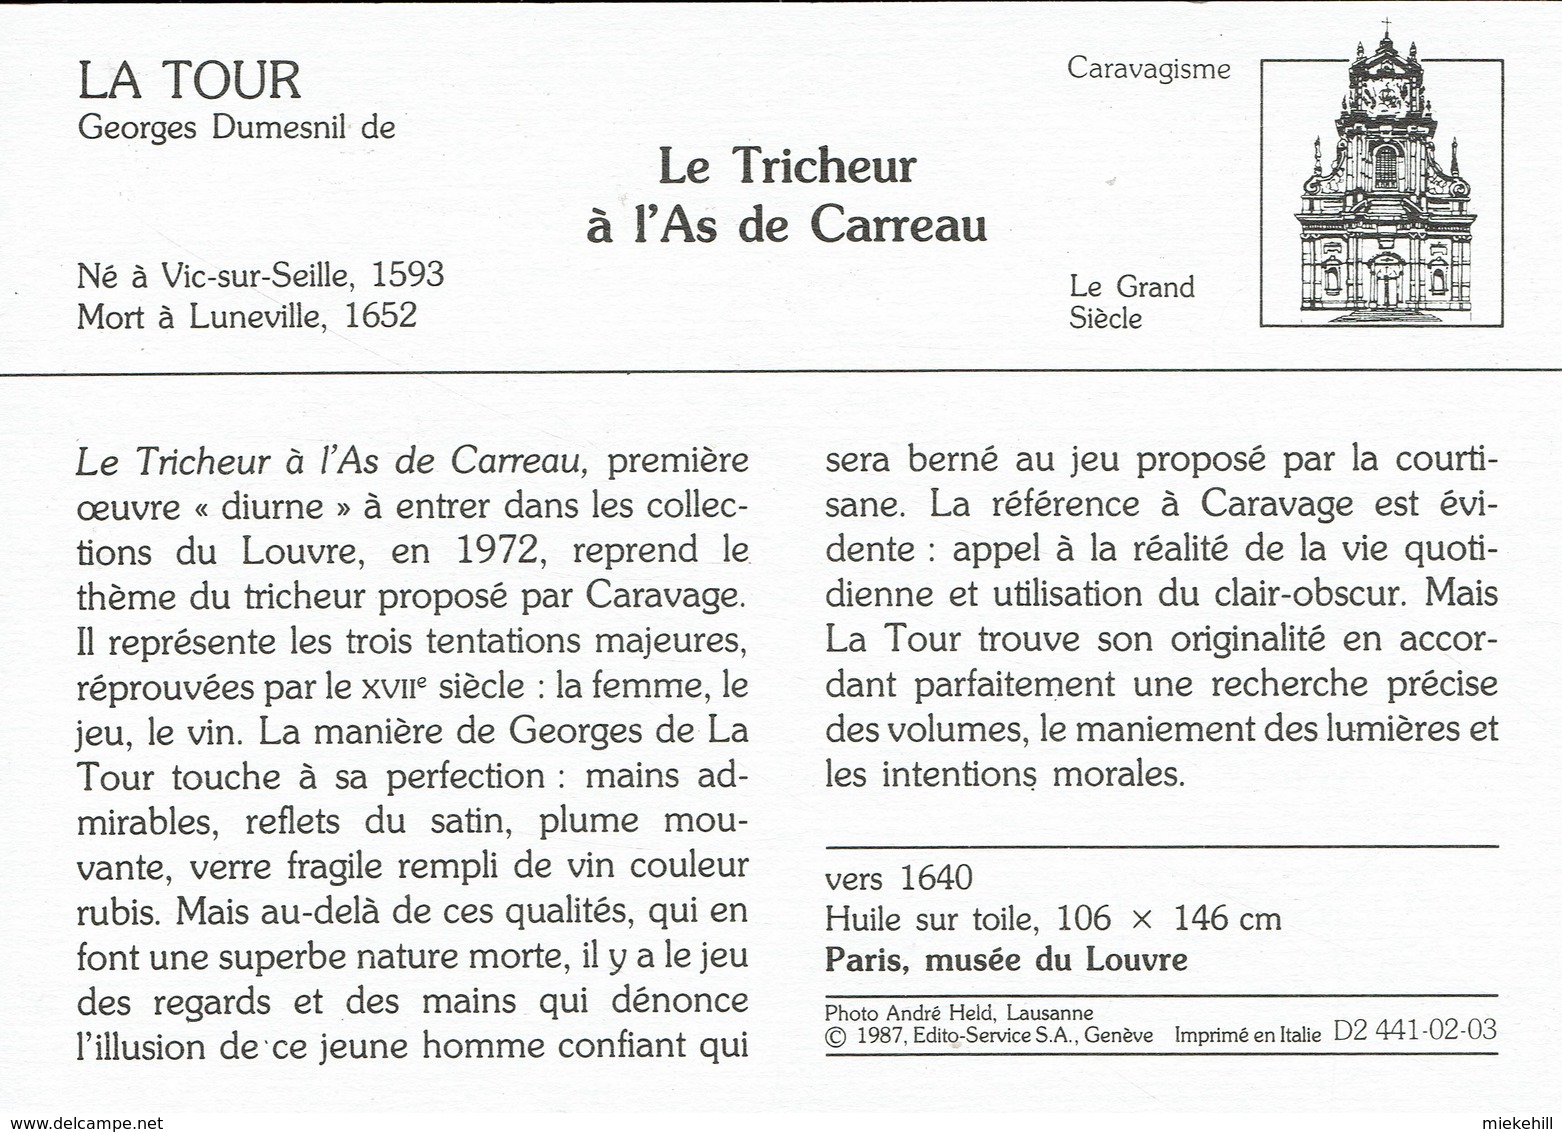 JEUX DE CARTE-TRICHEUR  A L'AS-VALSSPELER MET RUITENAAS-TABLEAU DE GEORGES LA TOUR-PARIS MUSEE DU LOUVRE - Spielkarten